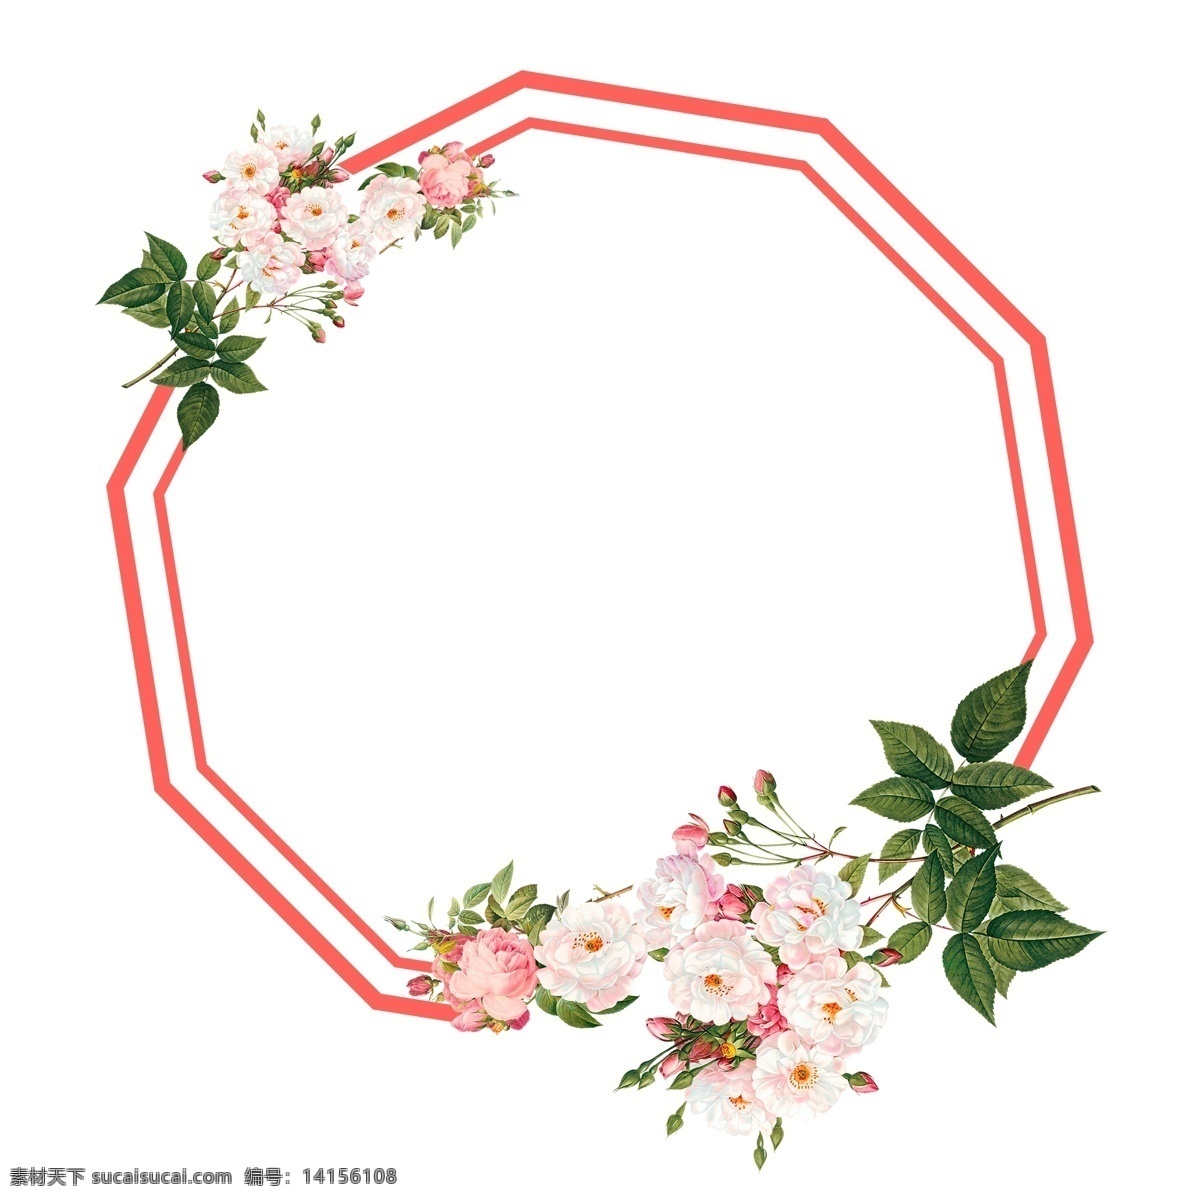 传统节日 浪漫 粉红色 花朵 边框 多角形 花朵边框 多角形边框 海报 免扣png 分层psd